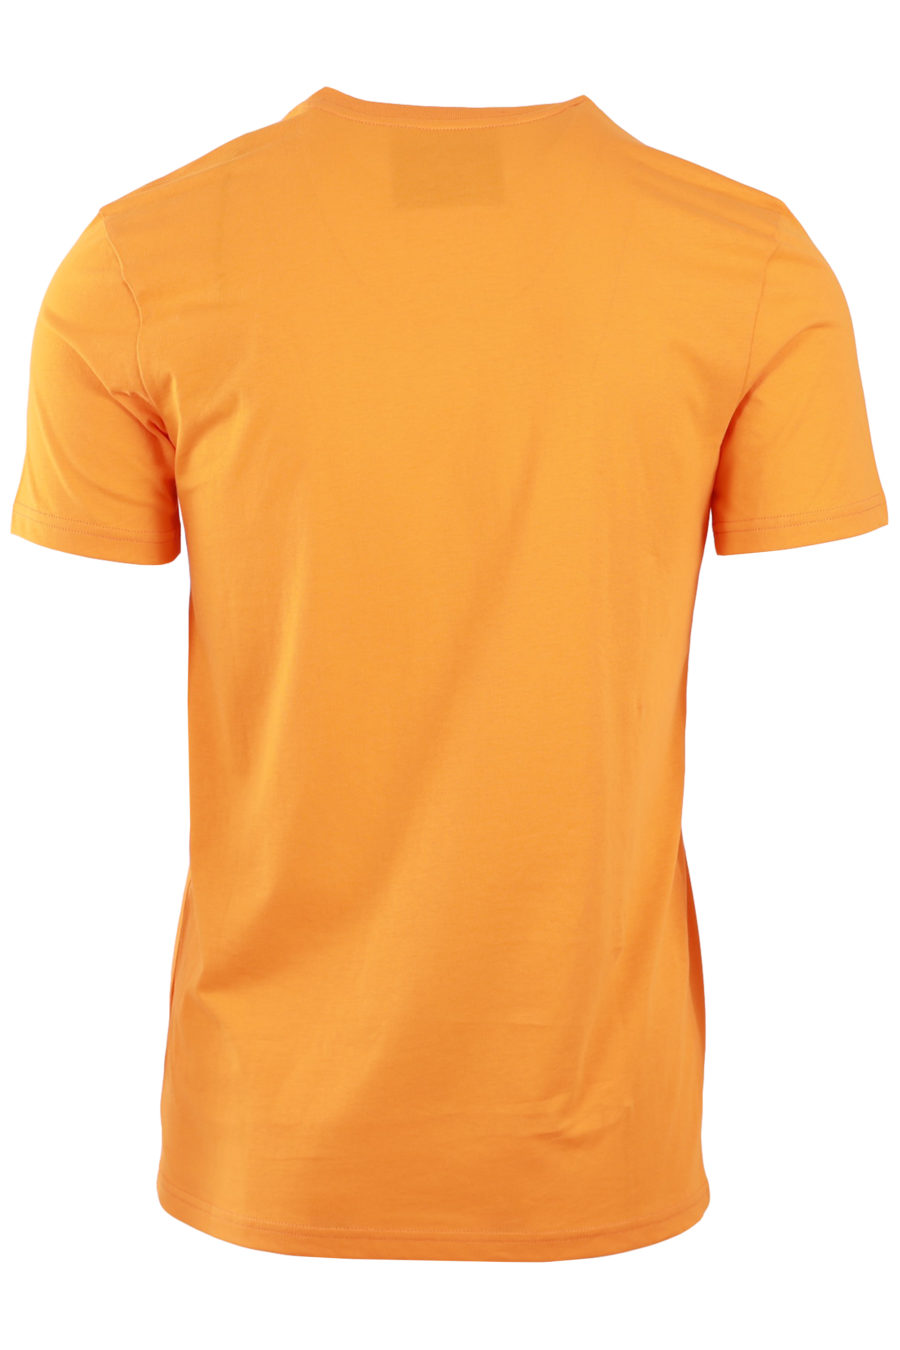 Camiseta naranja con logo negro - 66421f7279b23187ab77f6bd086012f2afcc5294